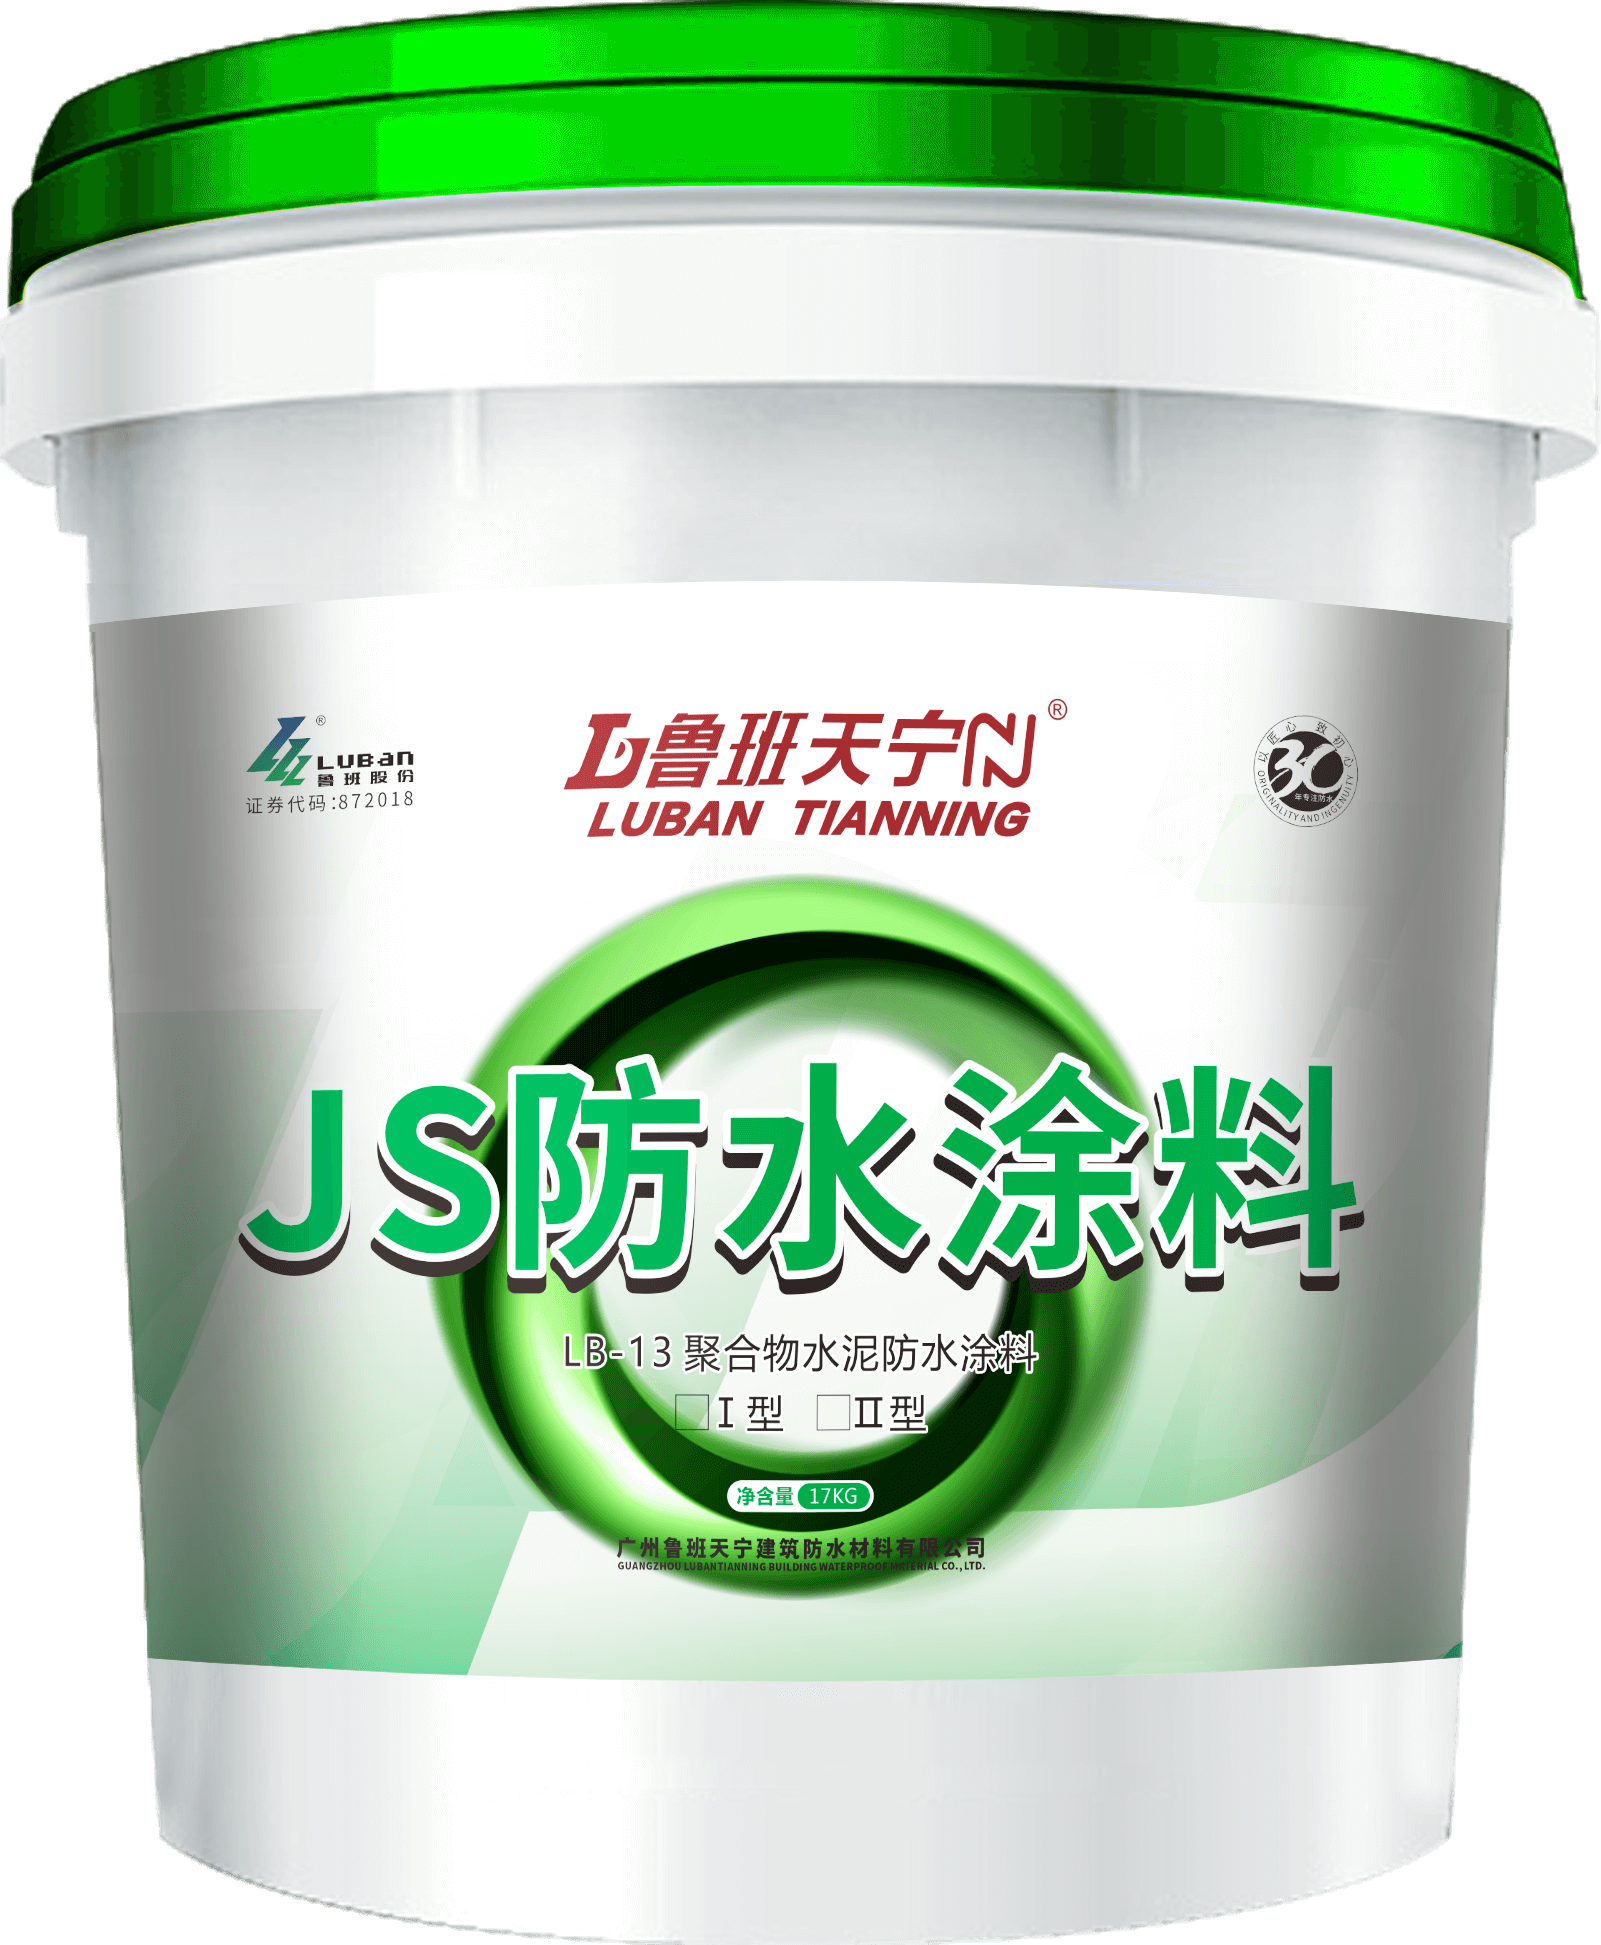 LB-13 聚合物水泥防水涂料（JS）